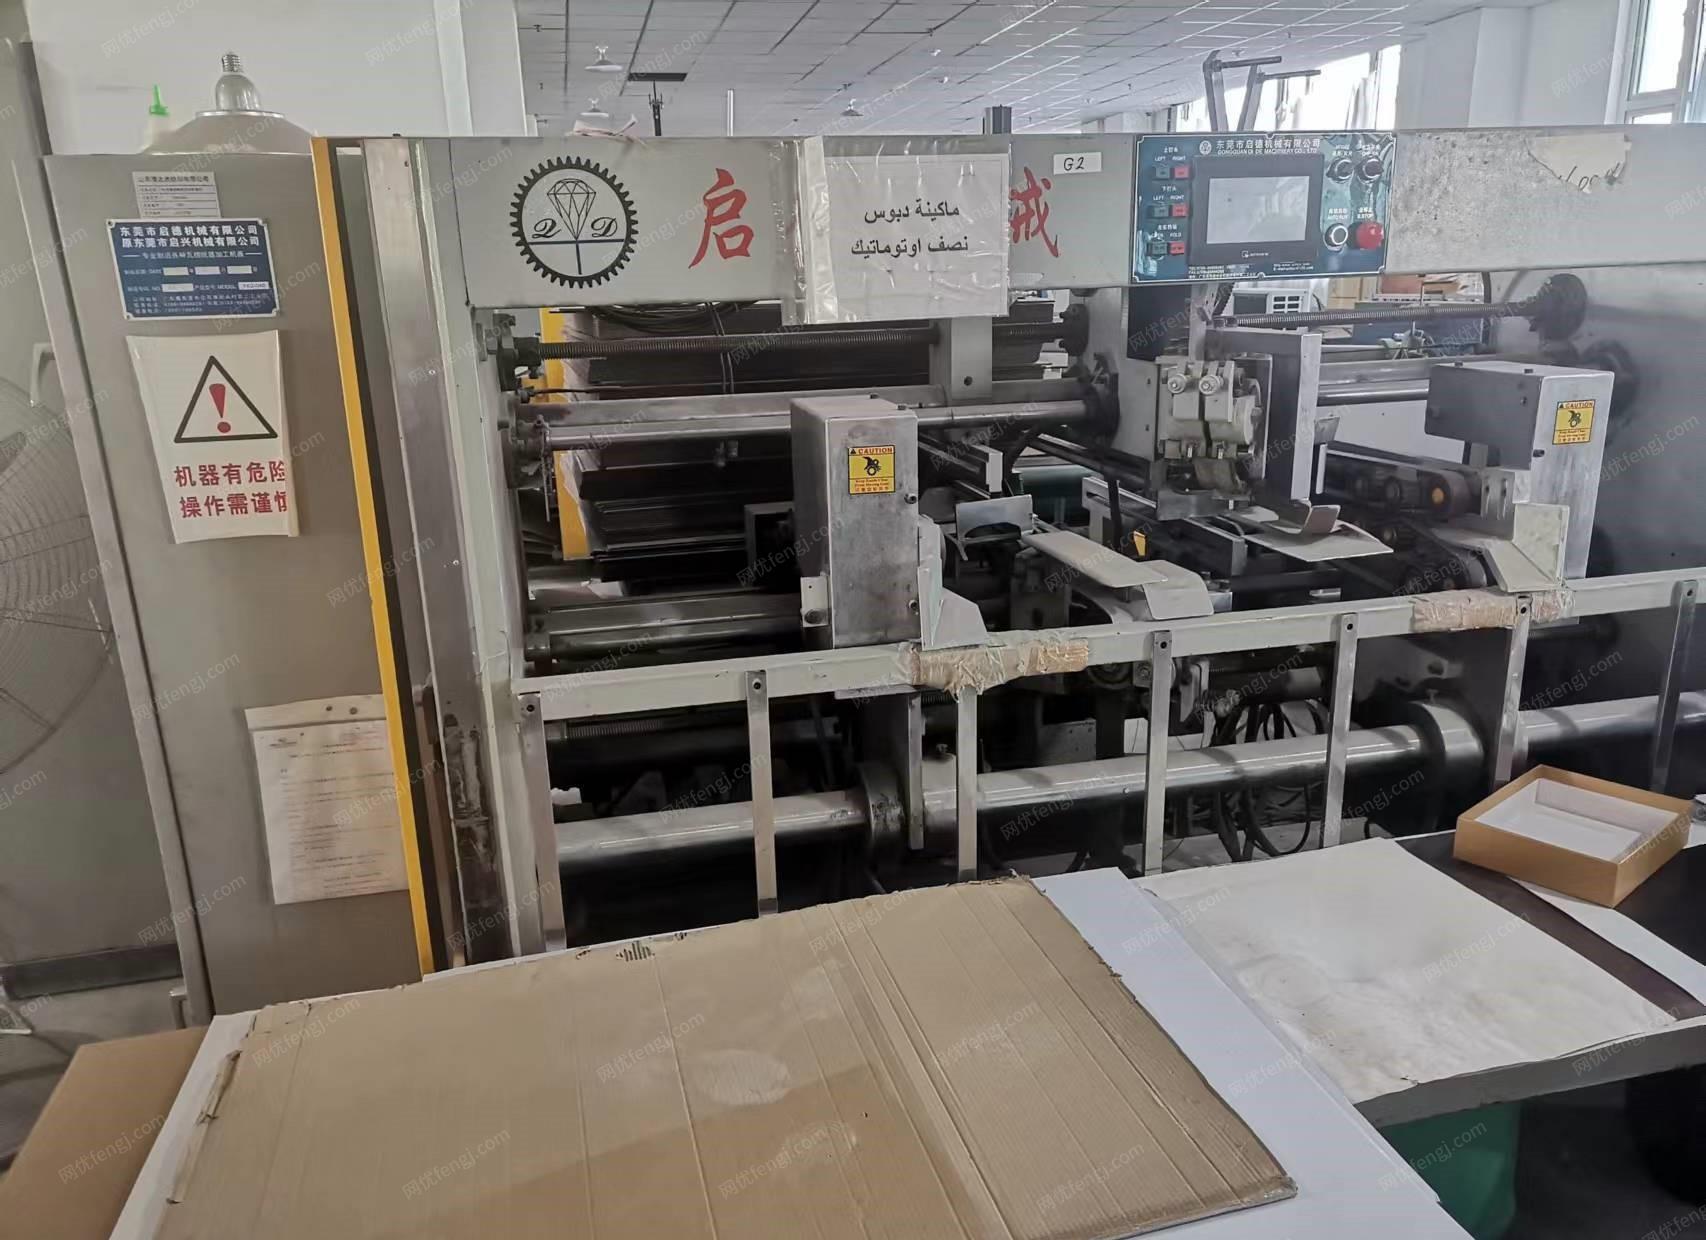 山东枣庄出售电脑凹版印刷机、双伺服钉箱机、全自动制盒机等印刷设备